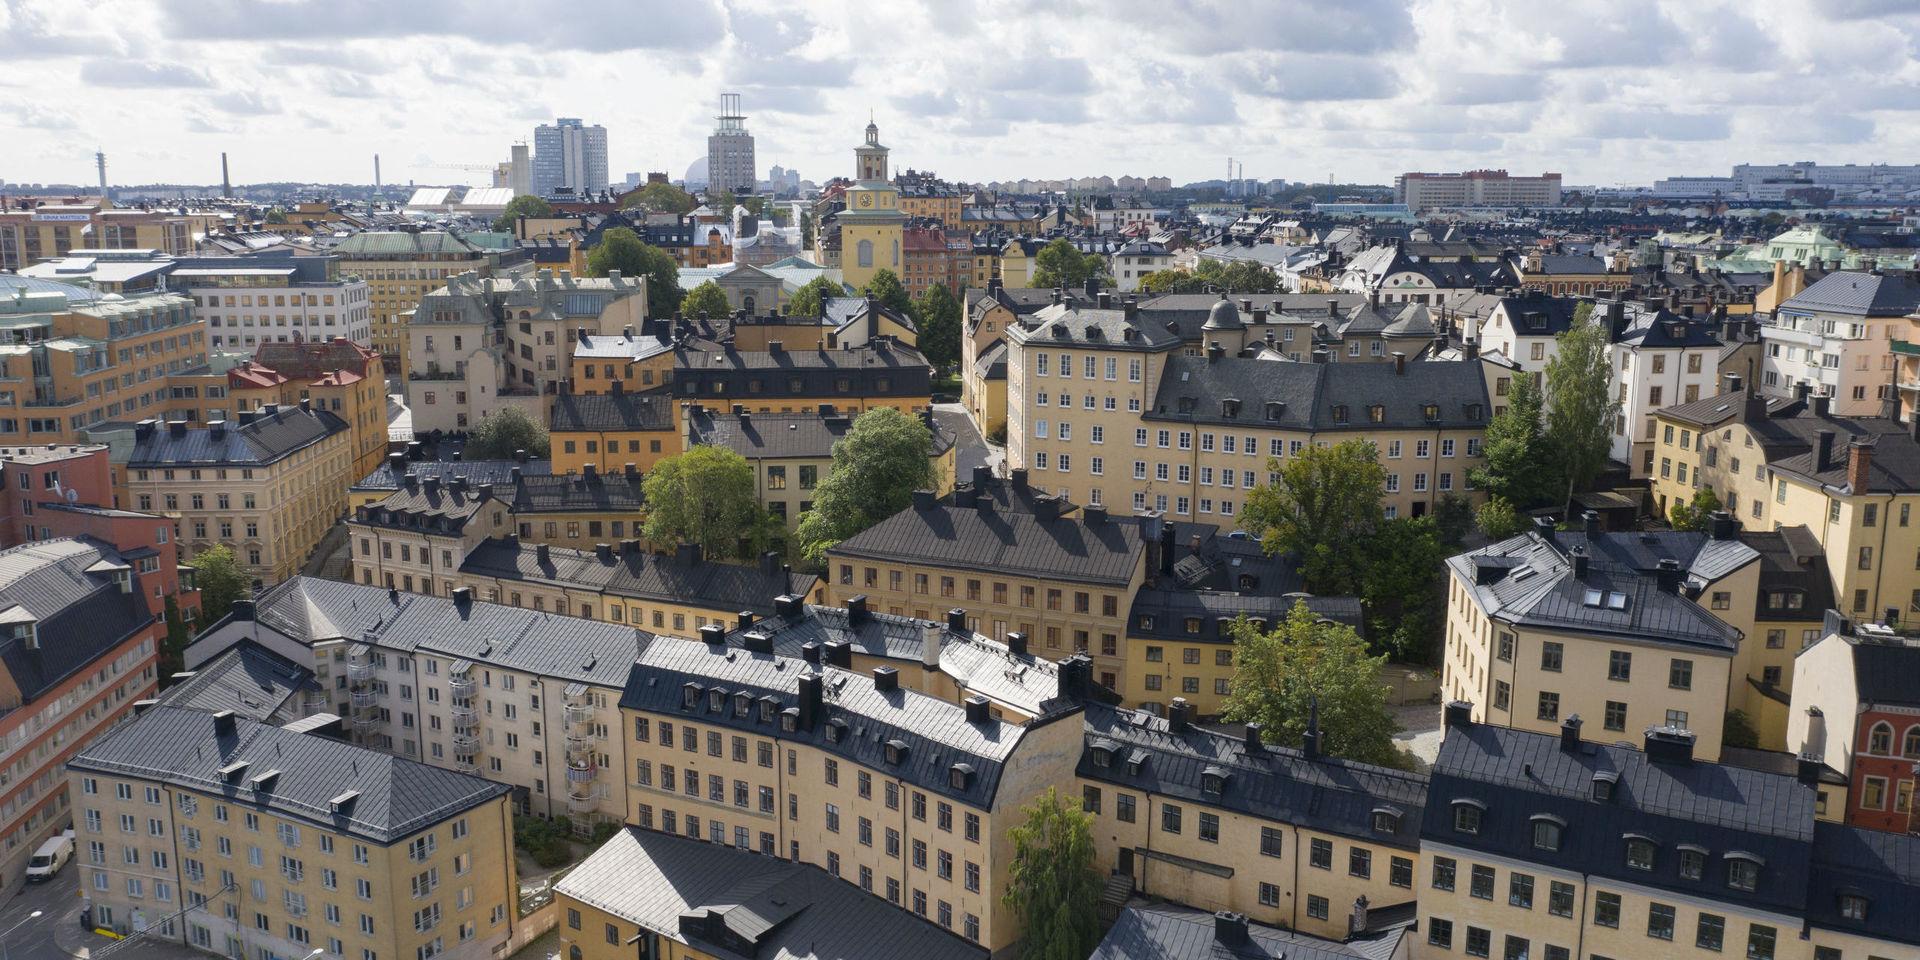 Stadsdelen Södermalm i Stockholm. Här ska Stigbergets Fot öppna inom kort är planen, i en kroglokal som beskrivs som anrik. 